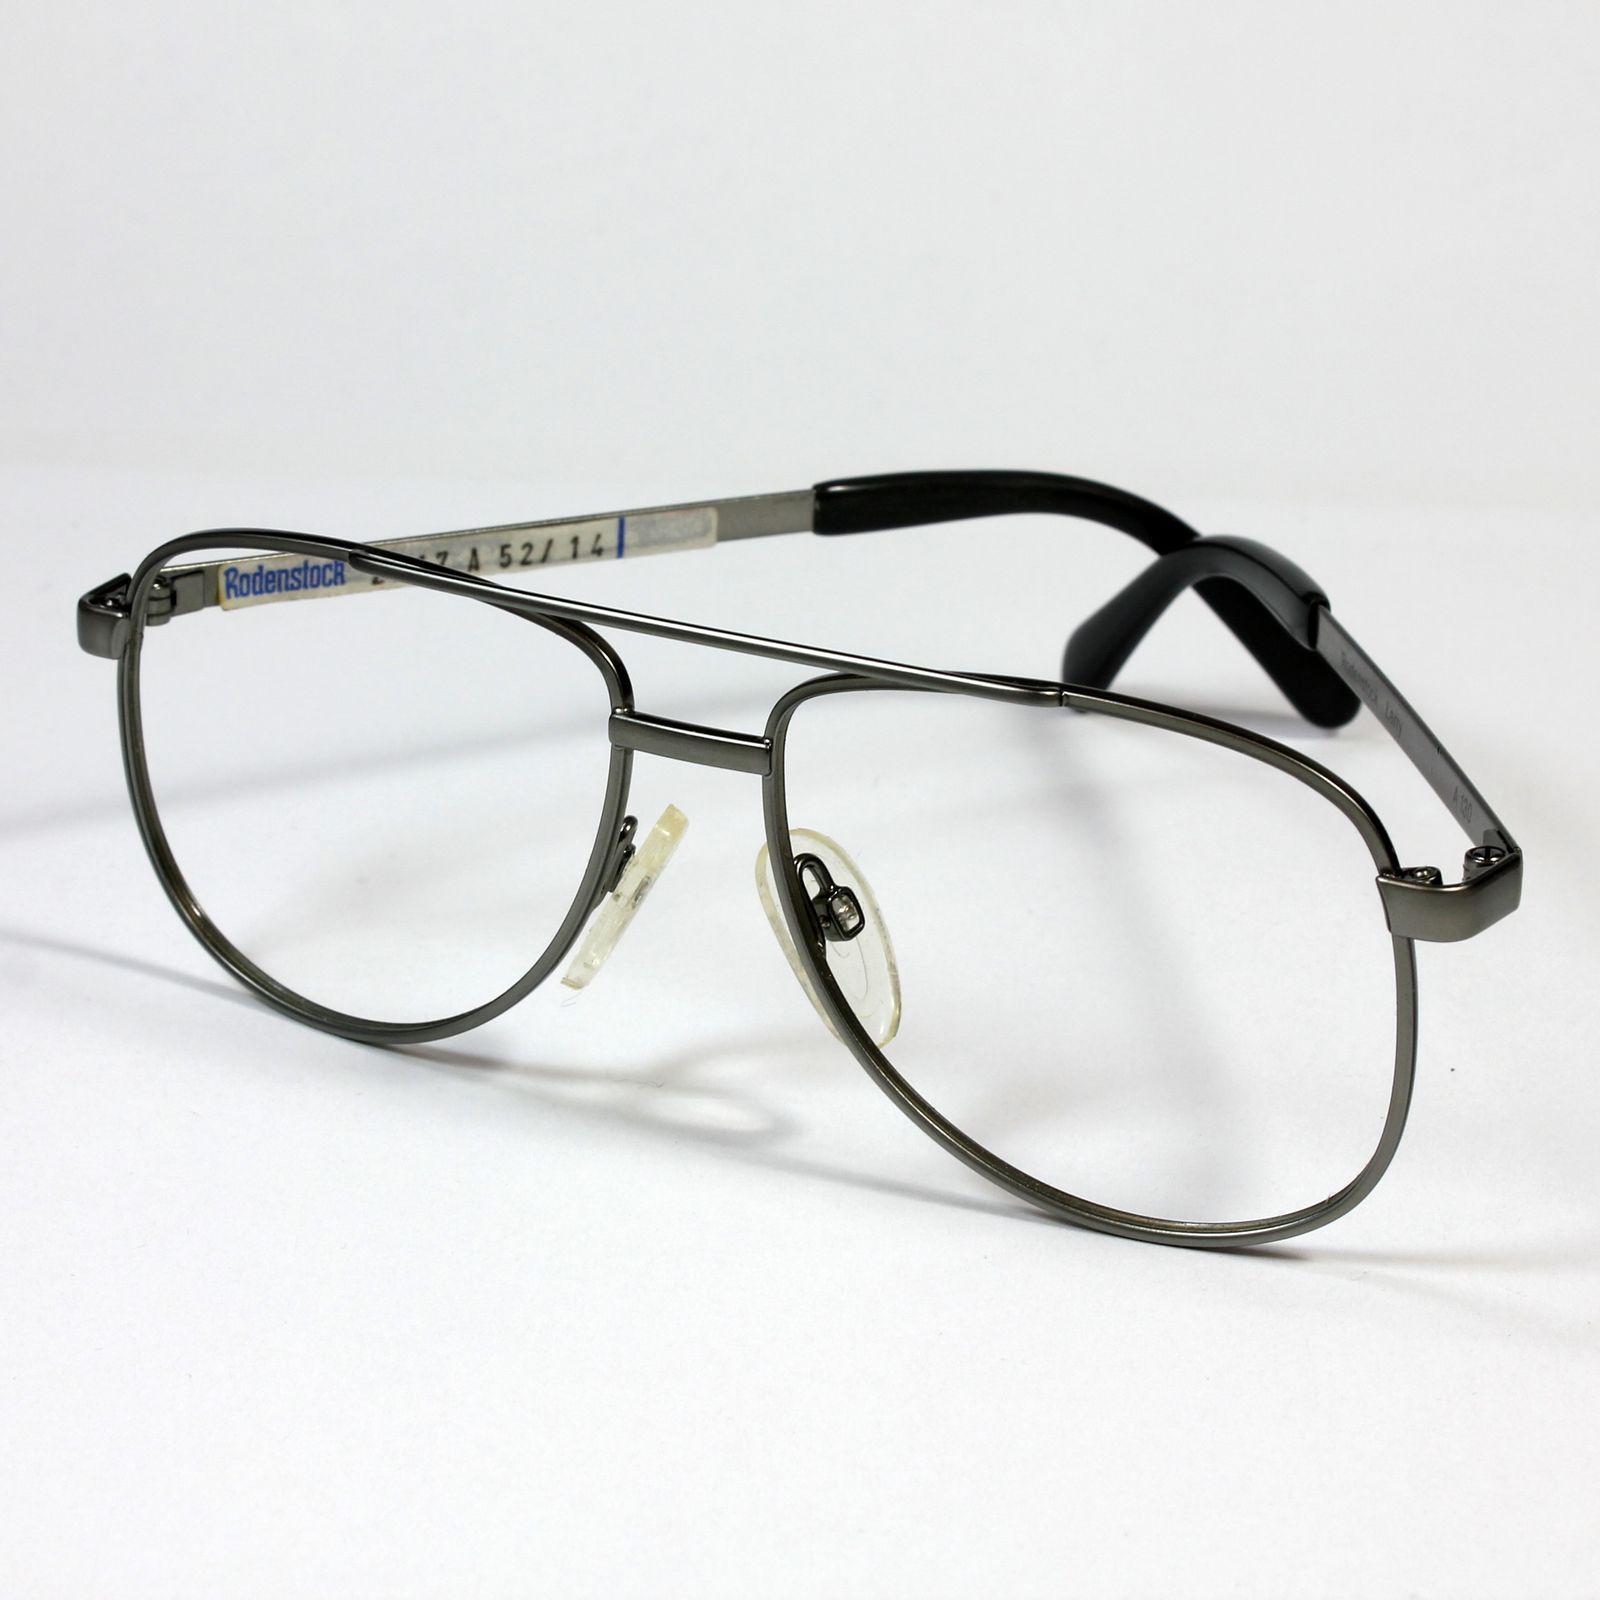 فریم عینک طبی رودن اشتوک مدل 2717 -  - 2